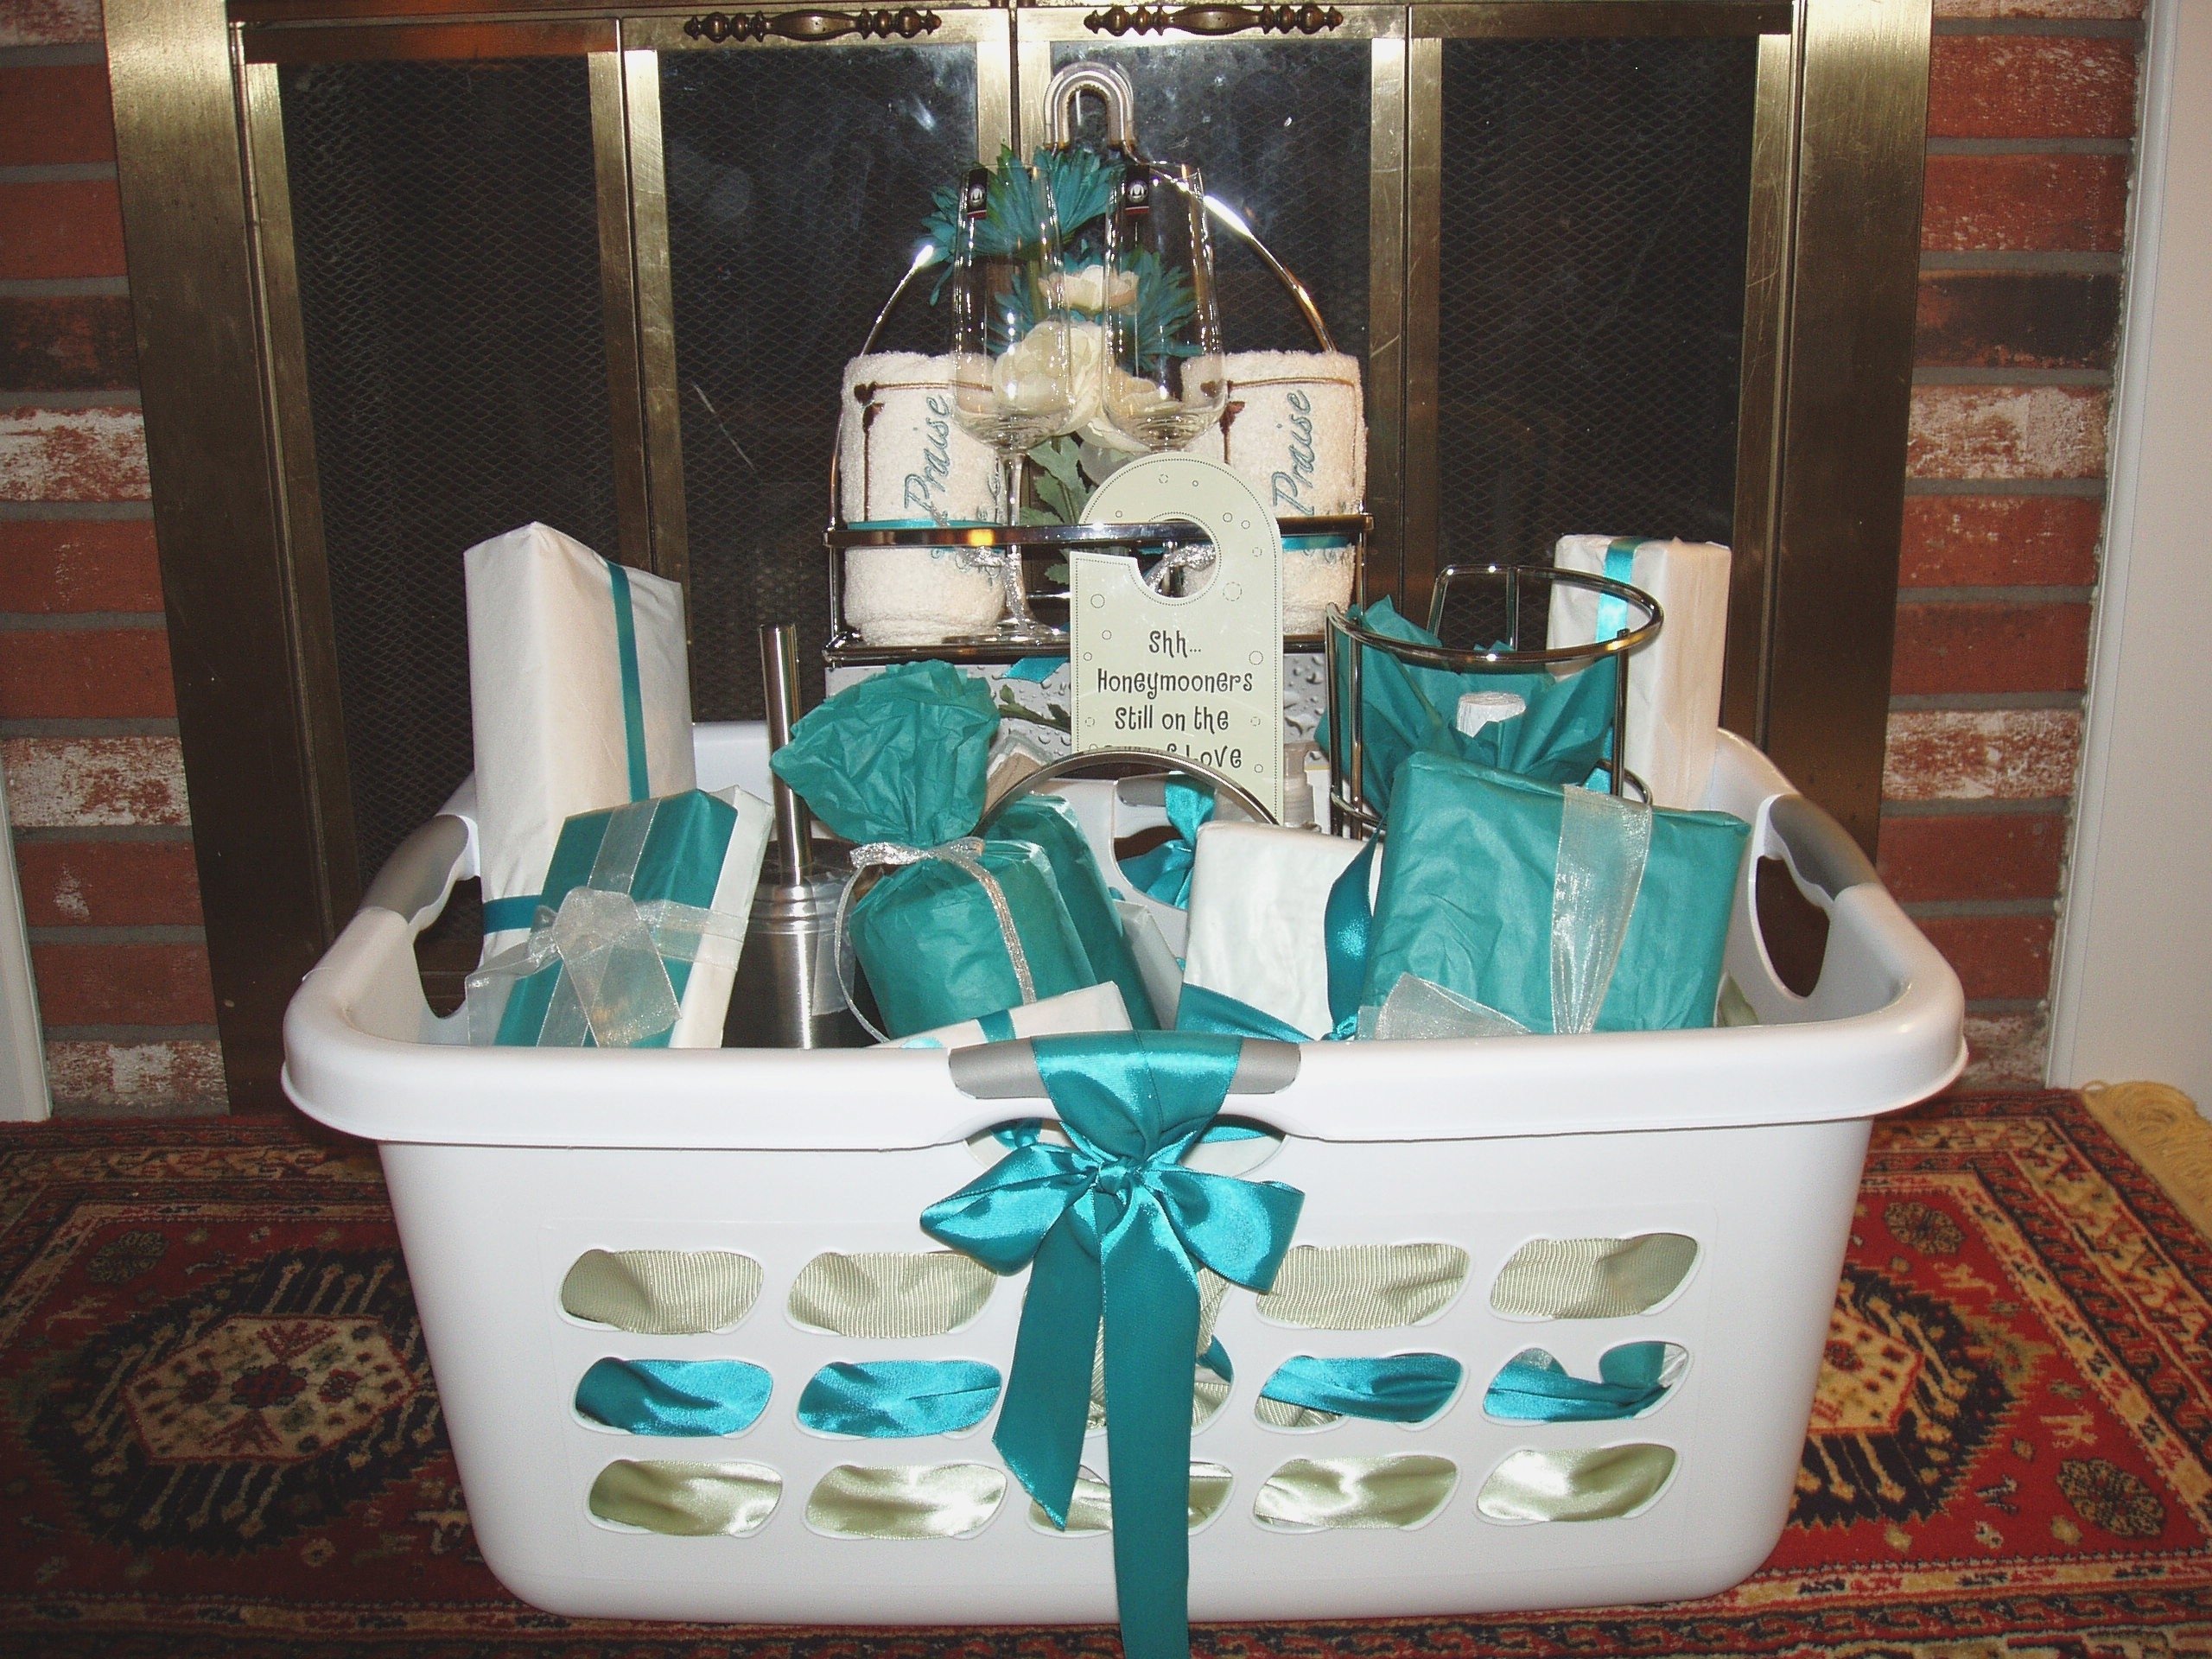 10 Ideal Bridal Shower Gift Basket Ideas wedding shower gift ideas hd images awesome bridal shower basket 2022